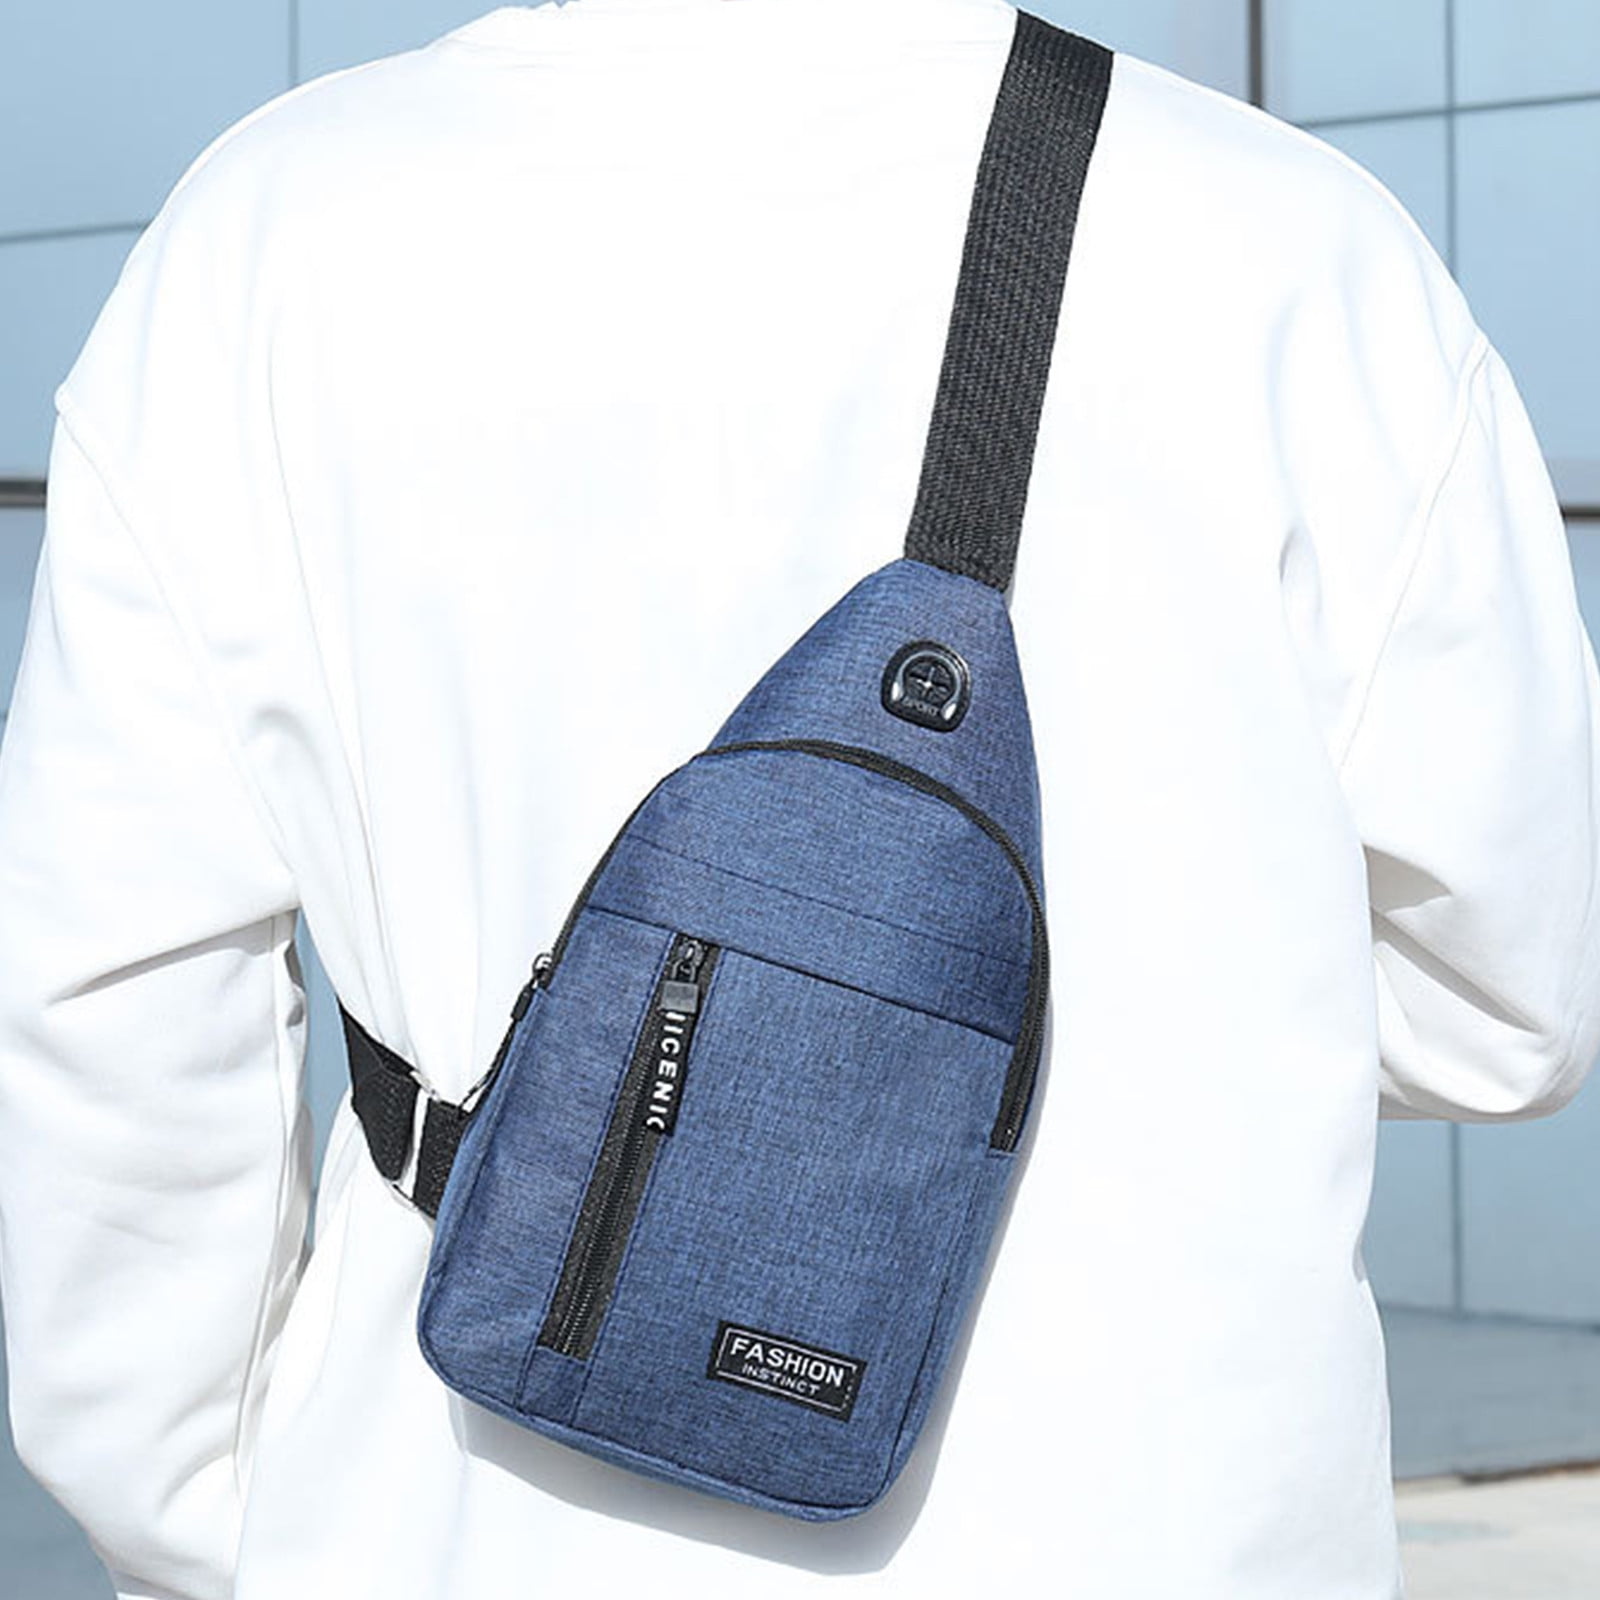 Battle Sports Lockdown 6 Sling Bag 2.0 - Single Shoulder Adjustable Strap,  Padded Sleeve for up to 15” Laptop, Crossbody Bag